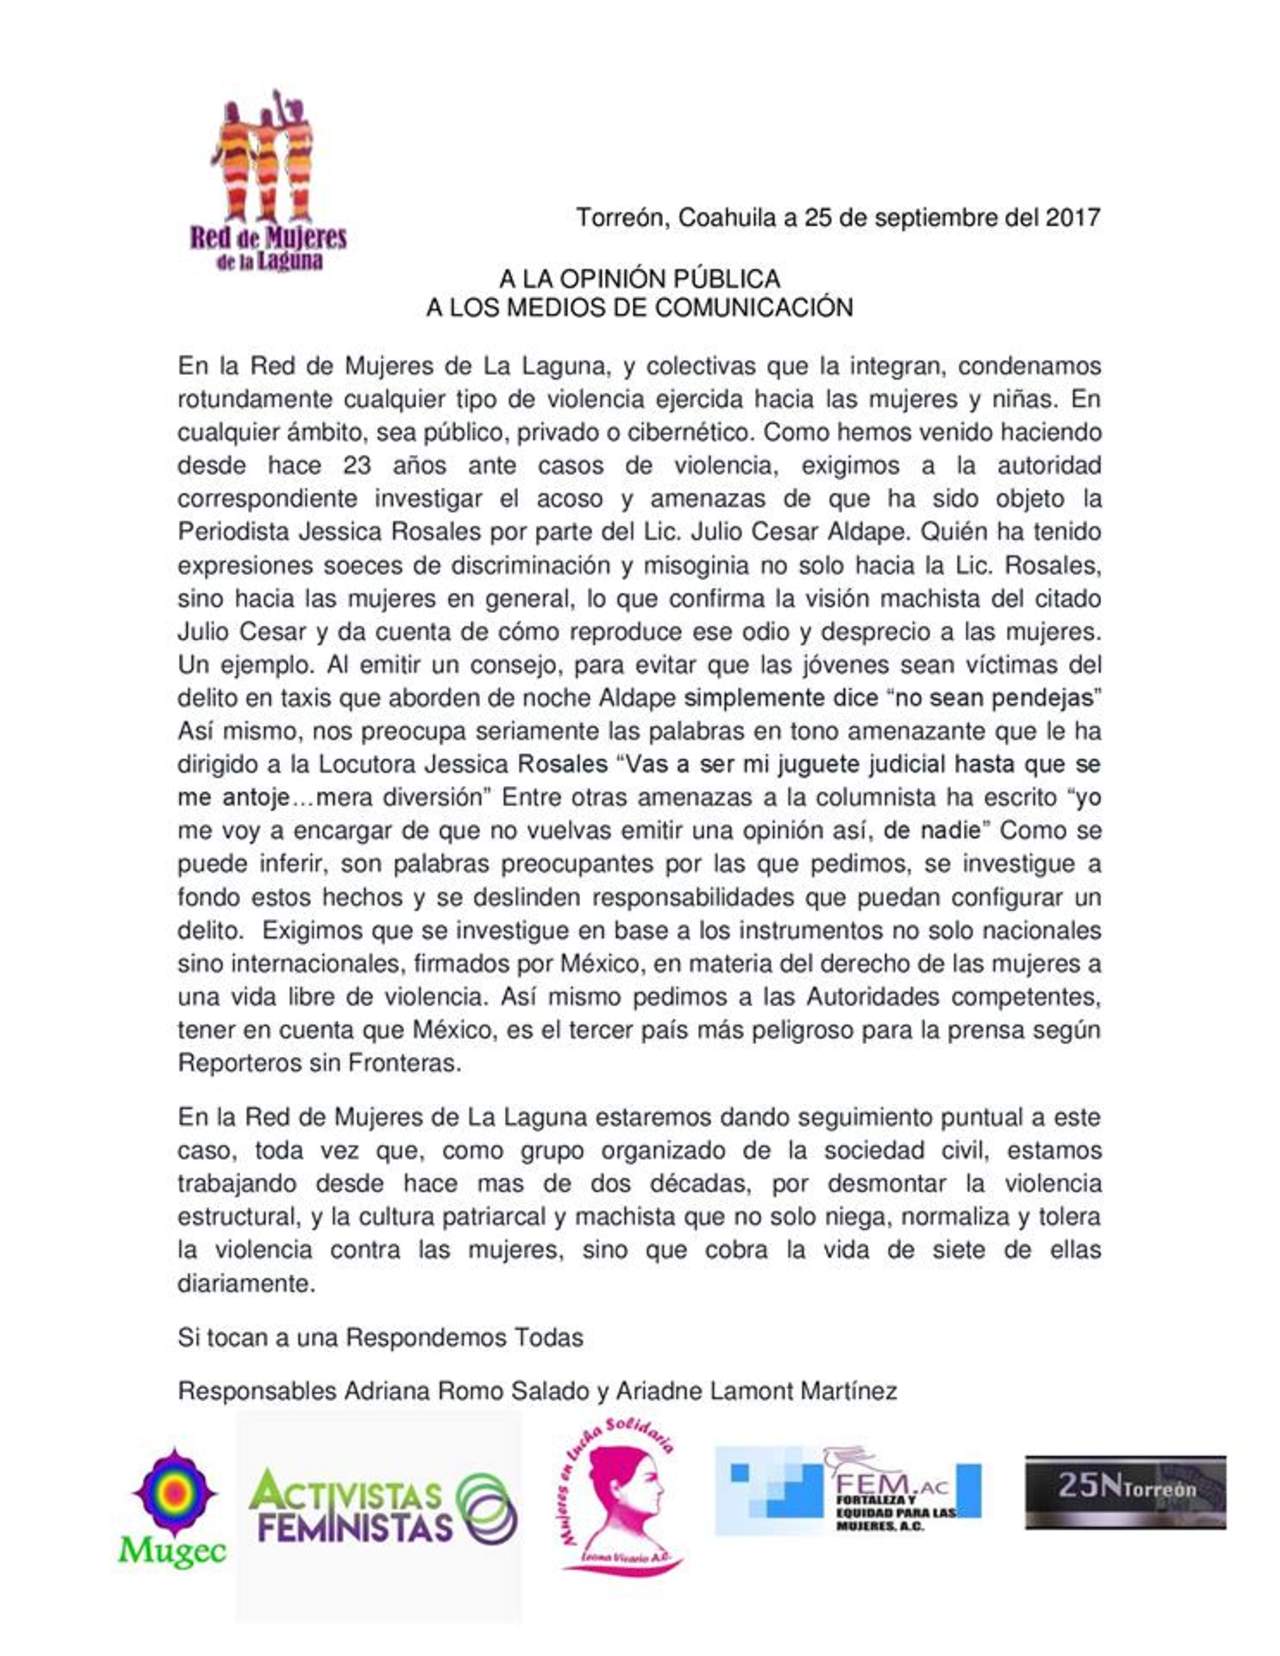 El documento es respaldado por La Red de Mujeres de la Laguna, Activistas Feministas de la Laguna, Mujeres en Lucha Solidaria, Fortaleza y Equidad para las Mujeres, y 25N Torreón. (ESPECIAL) 